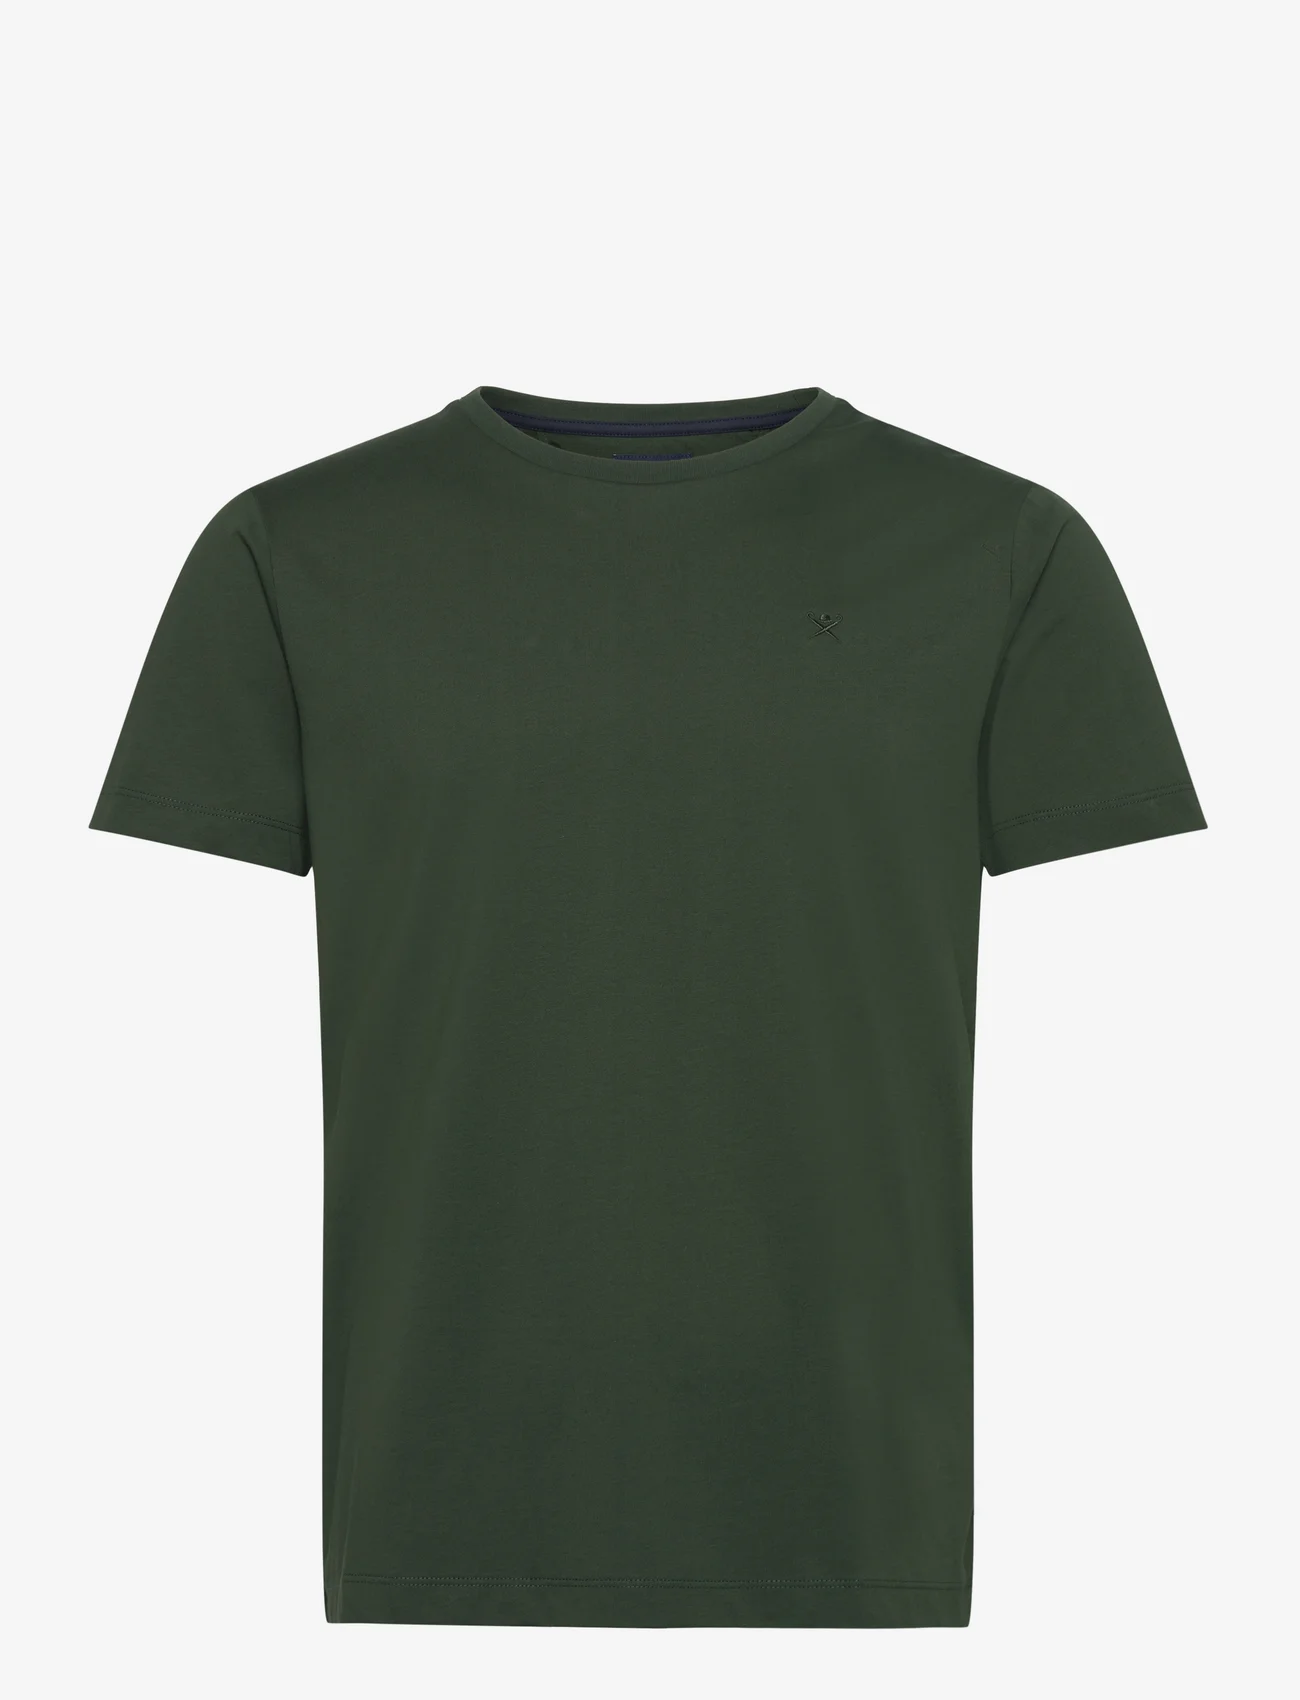 Hackett London - PIMA COTTON TEE - basis-t-skjorter - dark green - 0